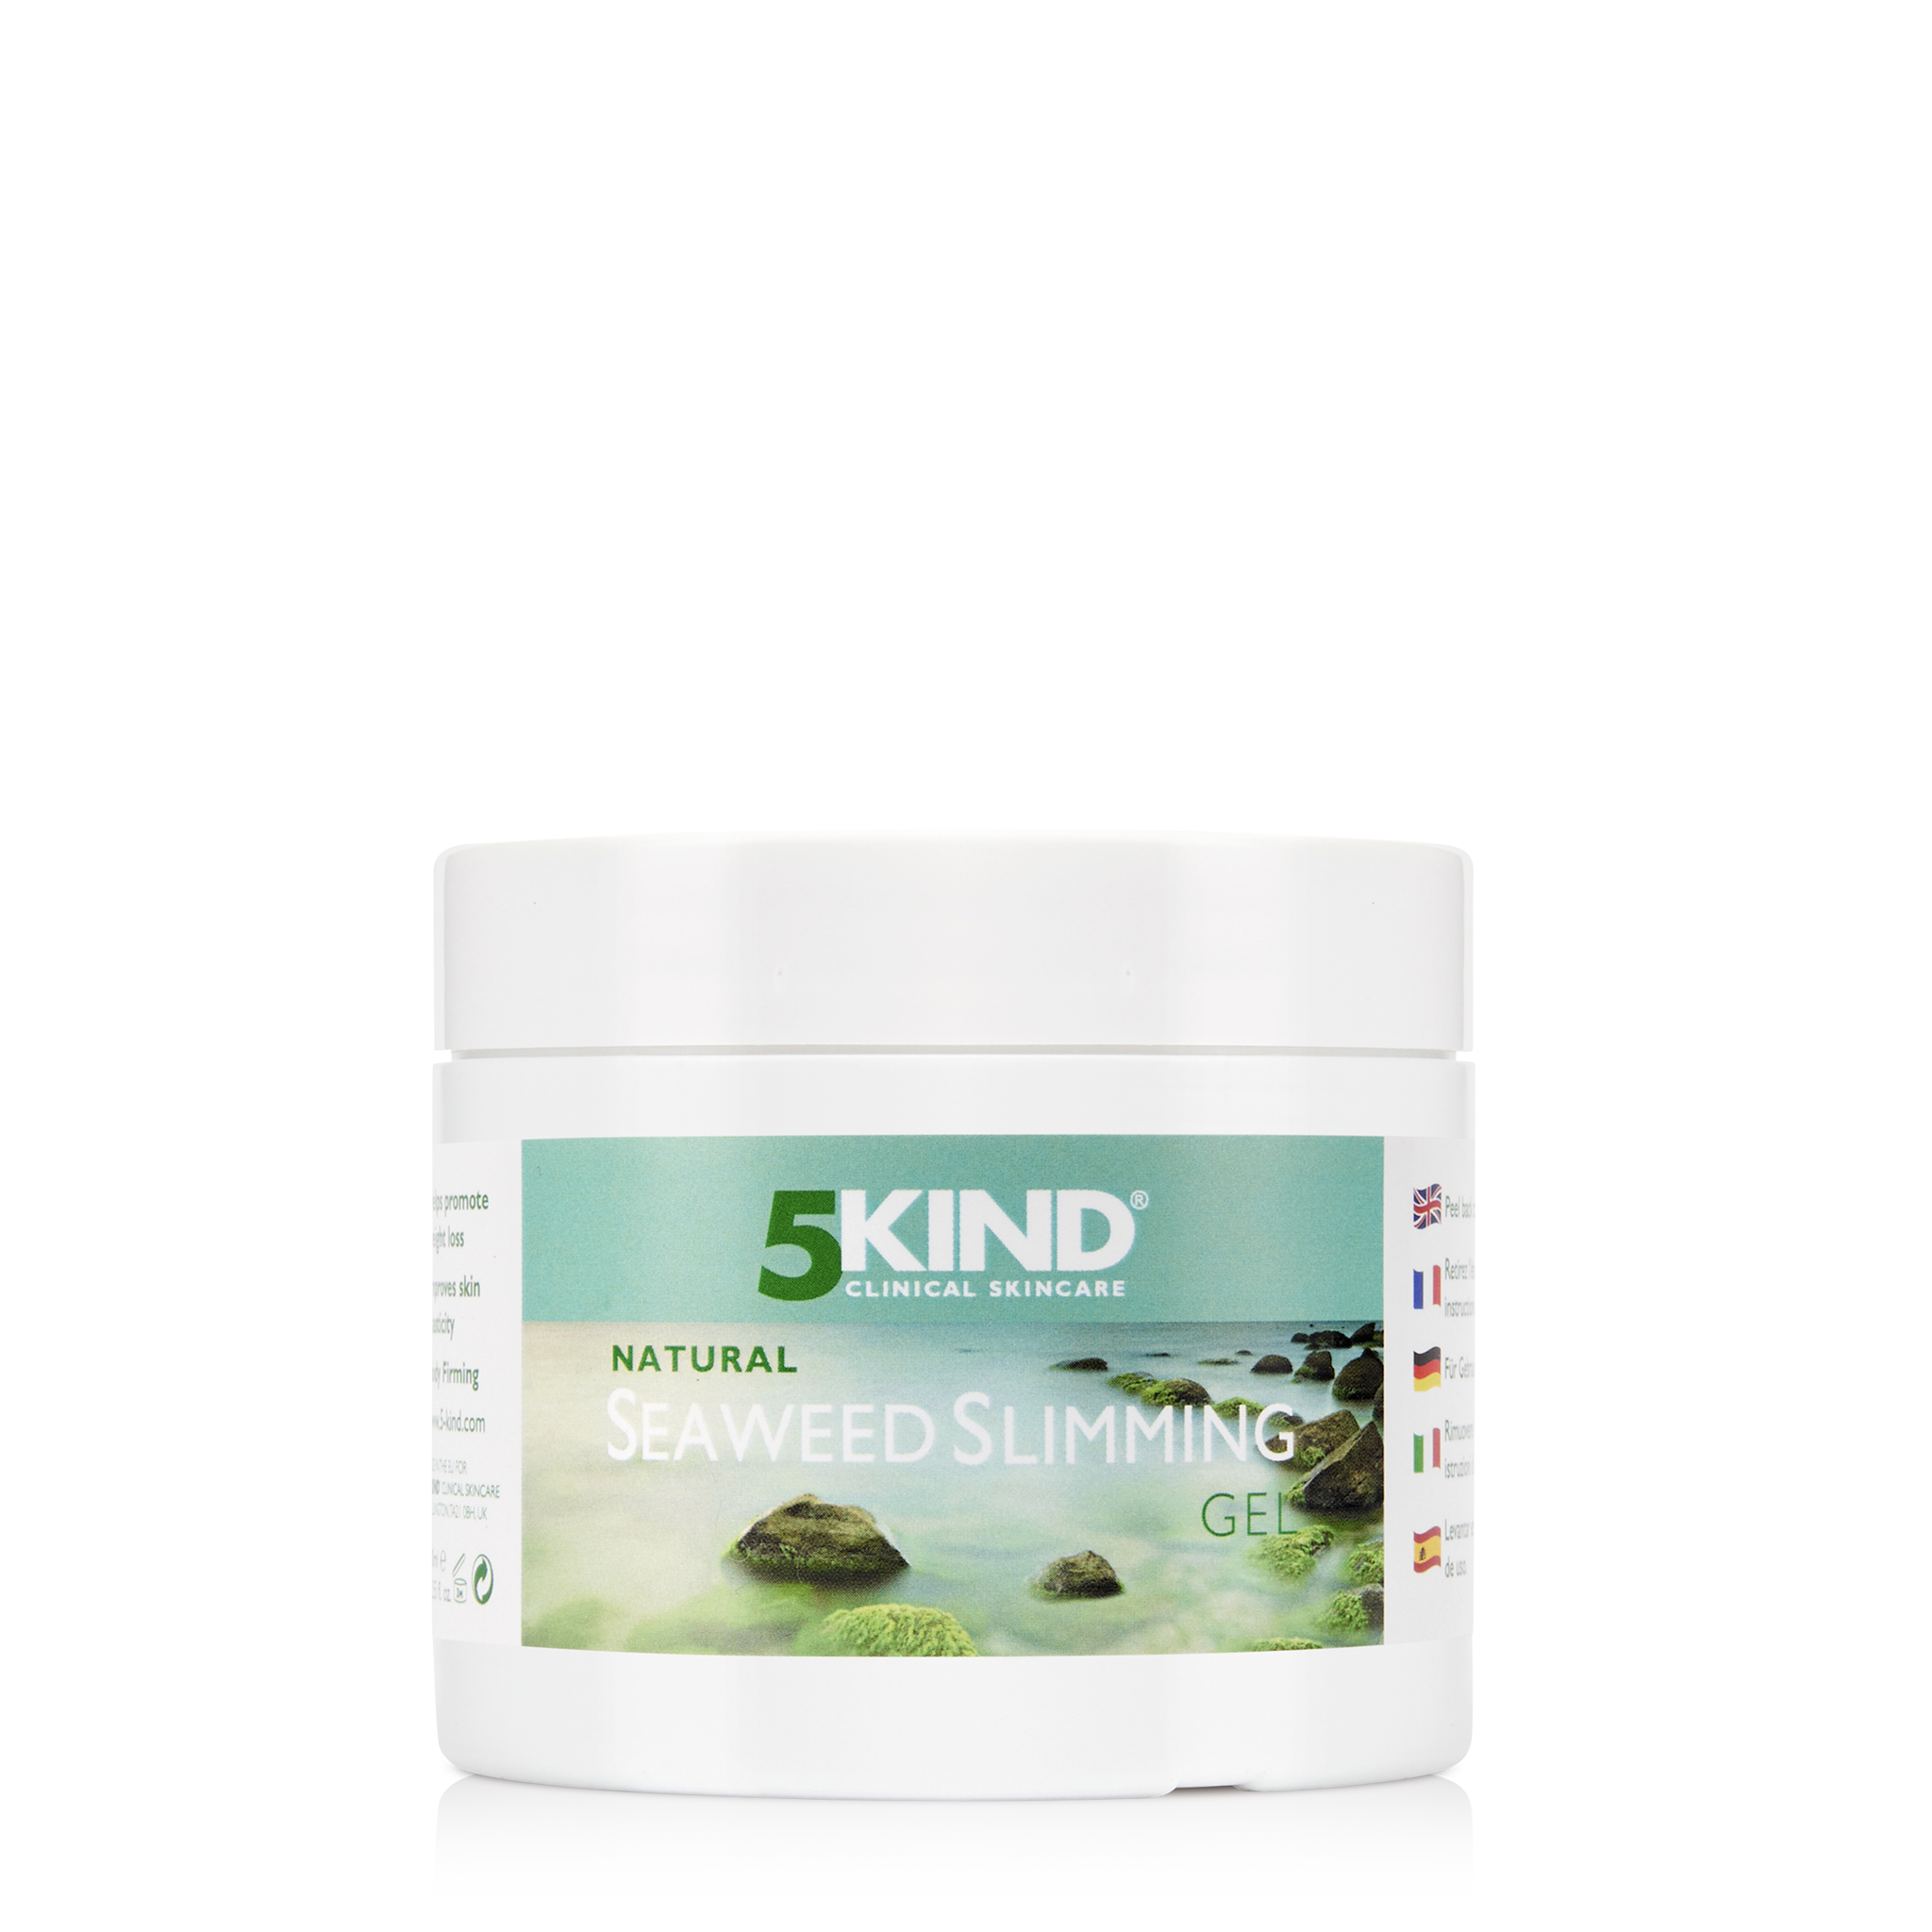 5Kind Natural Seaweed Slimming Gel